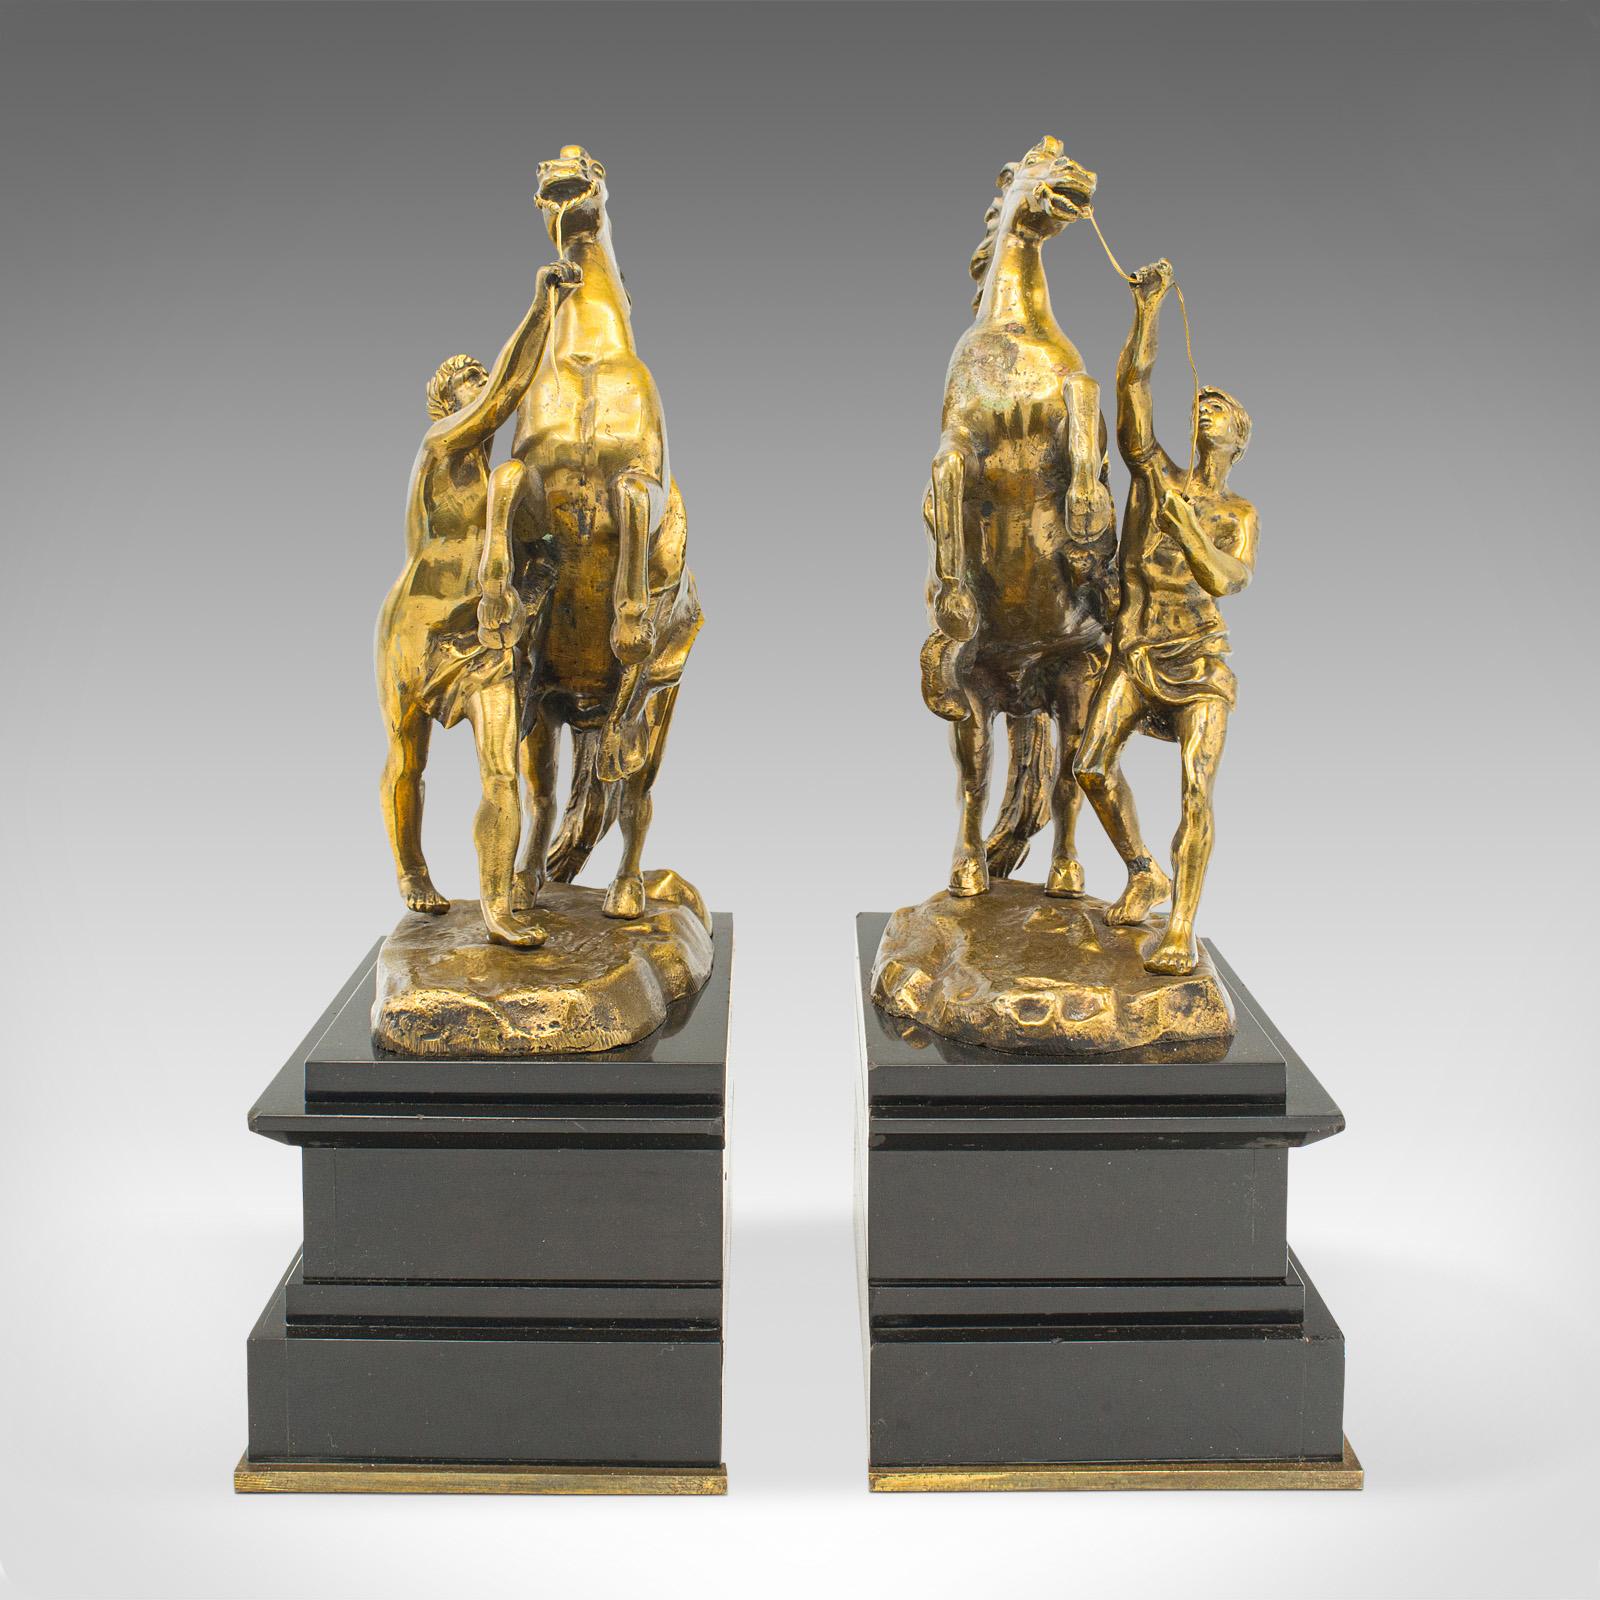 Dies ist ein Paar antiker Marly Horse Buchstützen. Französische Grand-Tour-Buchstütze aus Bronze und Schiefer aus der viktorianischen Zeit um 1860.

Kräftige Buchstützen mit auffallend goldener Oberfläche und berühmten Motiven
Mit wünschenswerter